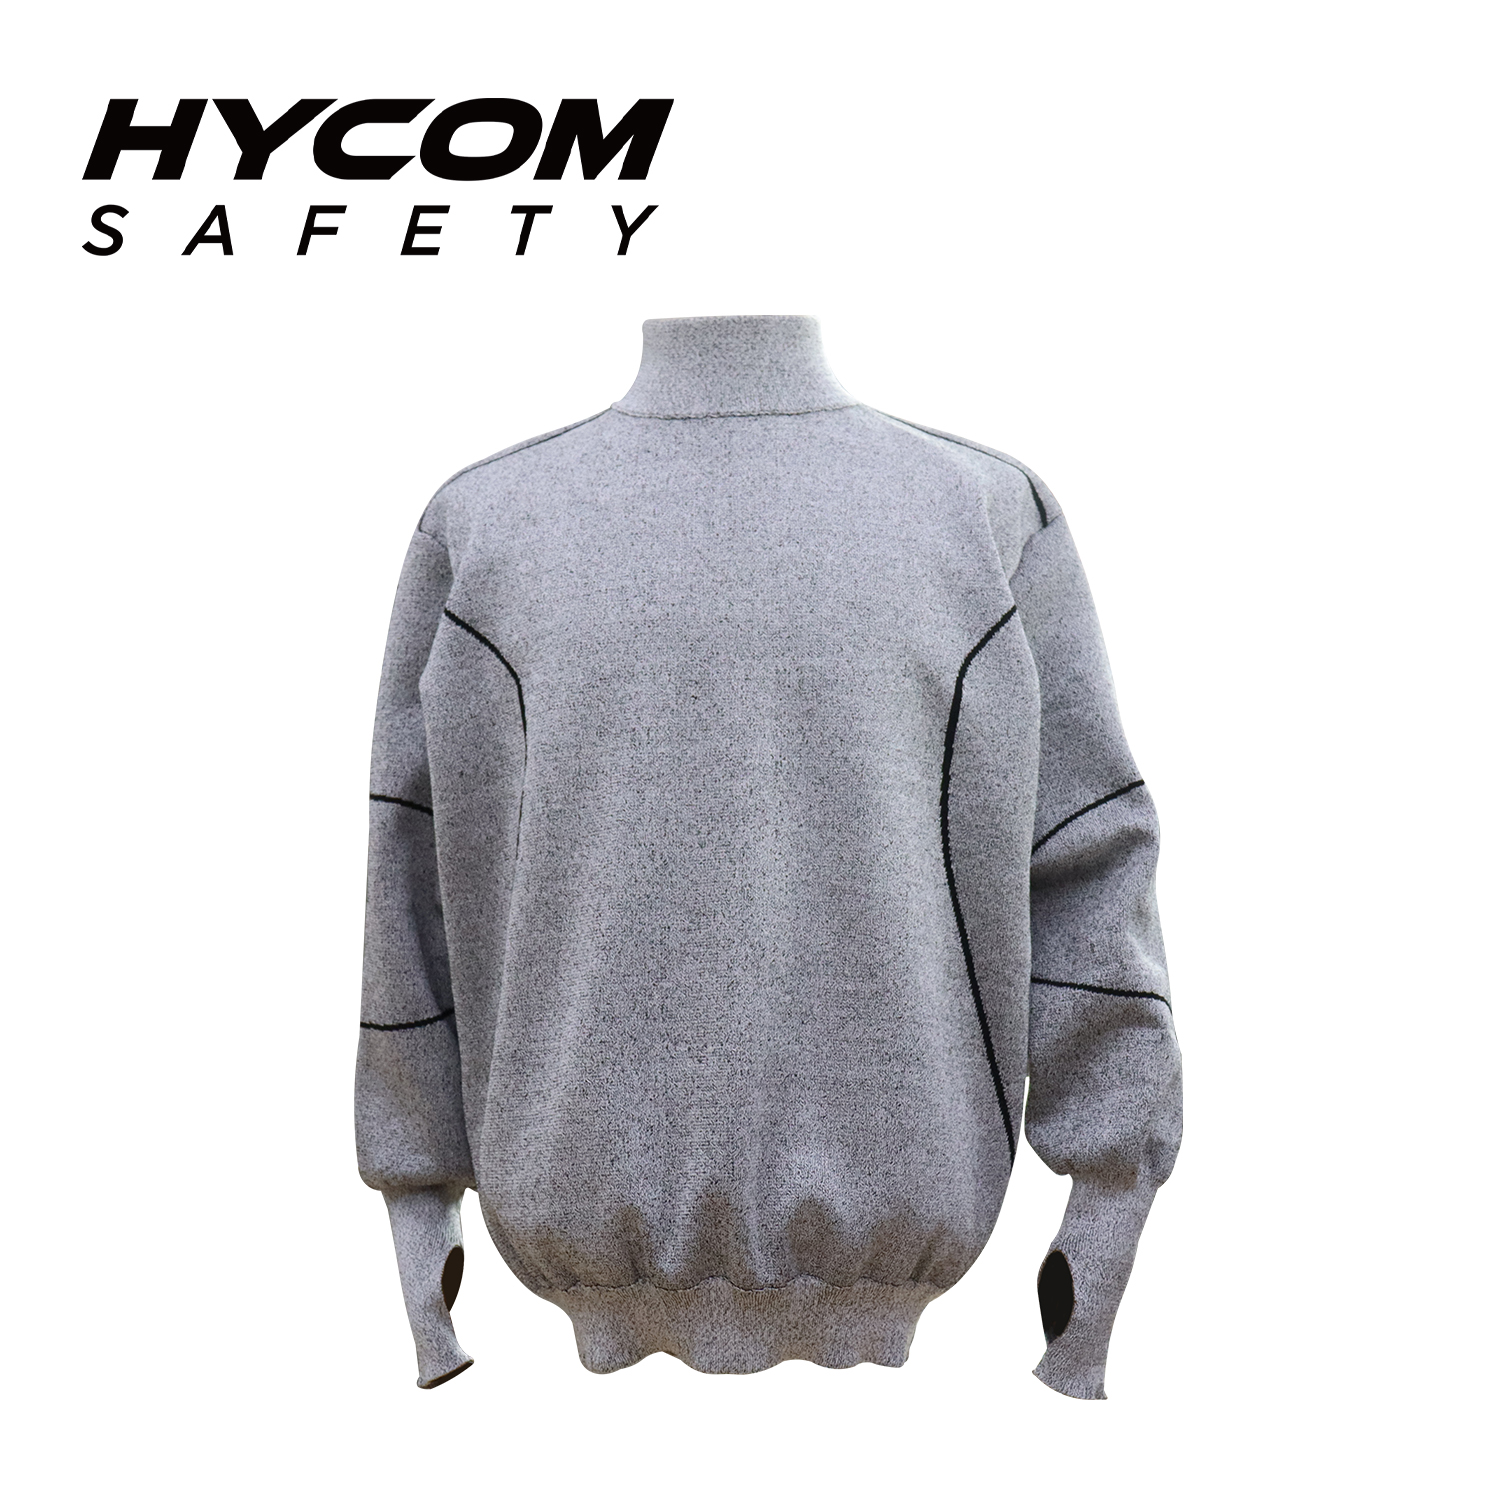 HYCOM Graue schnittfeste Kleidung nach ANSI 6 mit Daumenloch und Handflächenschutz. PSA-Kleidung